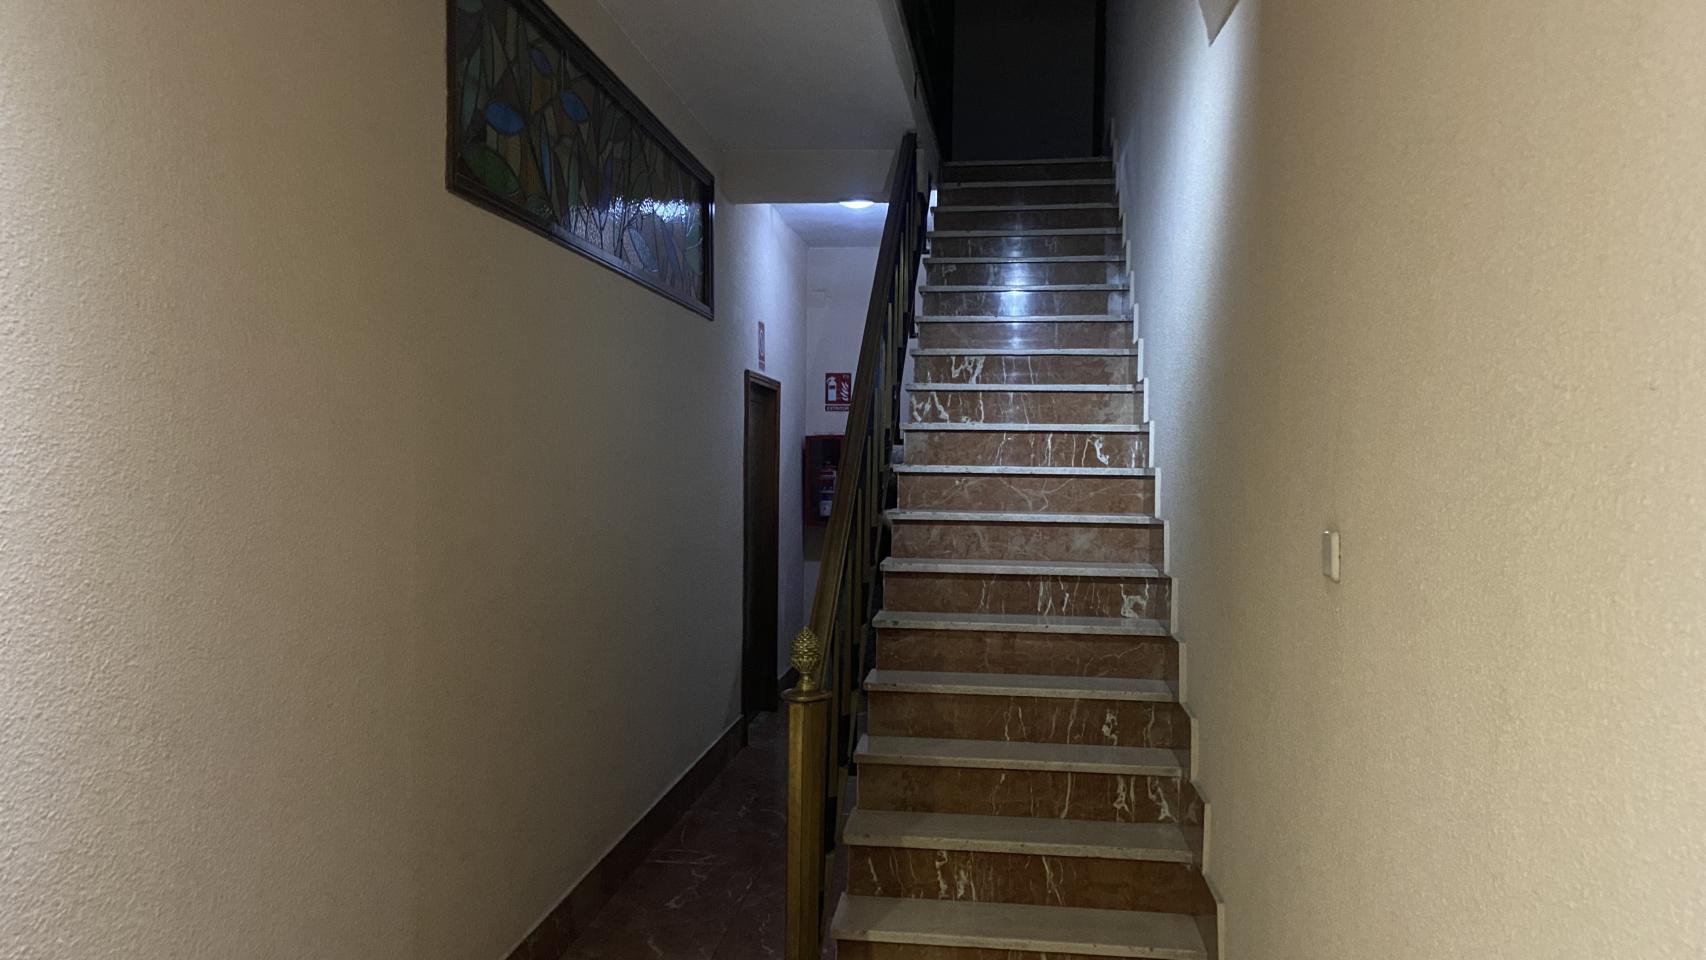 La escalera que da acceso a la vivienda en la que murió Esteban.